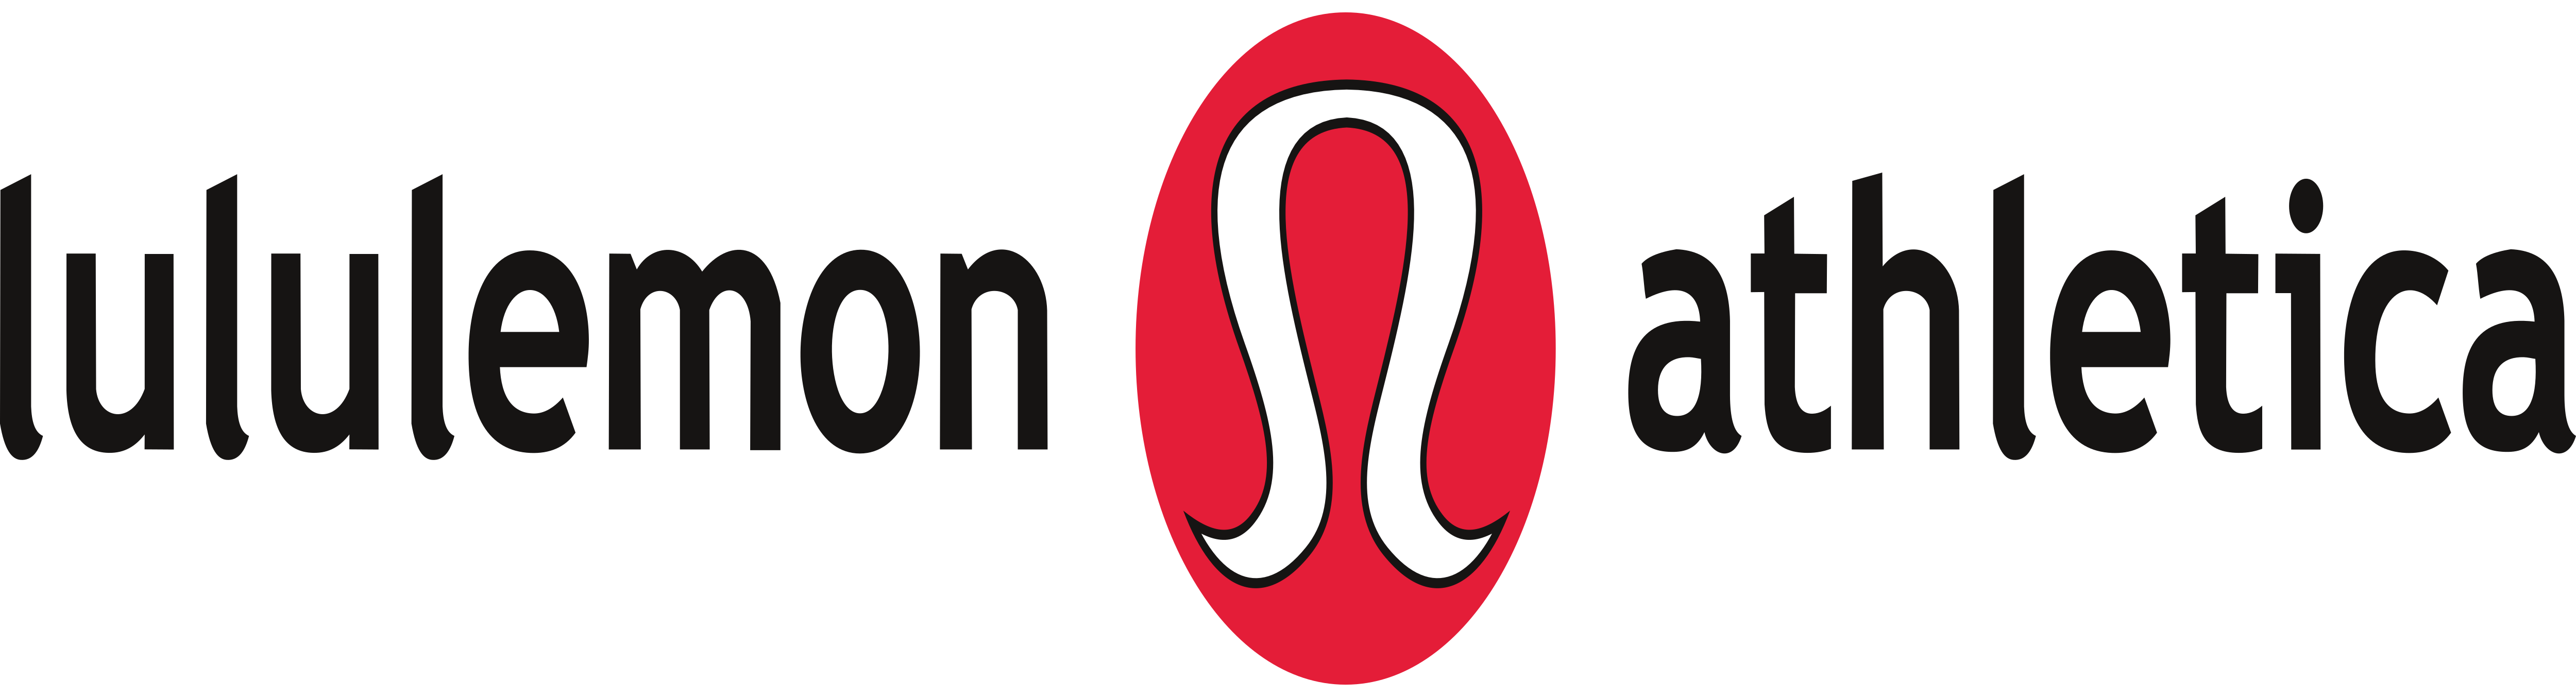 https://logos-download.com/wp-content/uploads/2019/01/Lululemon_Athletica_Logo.png